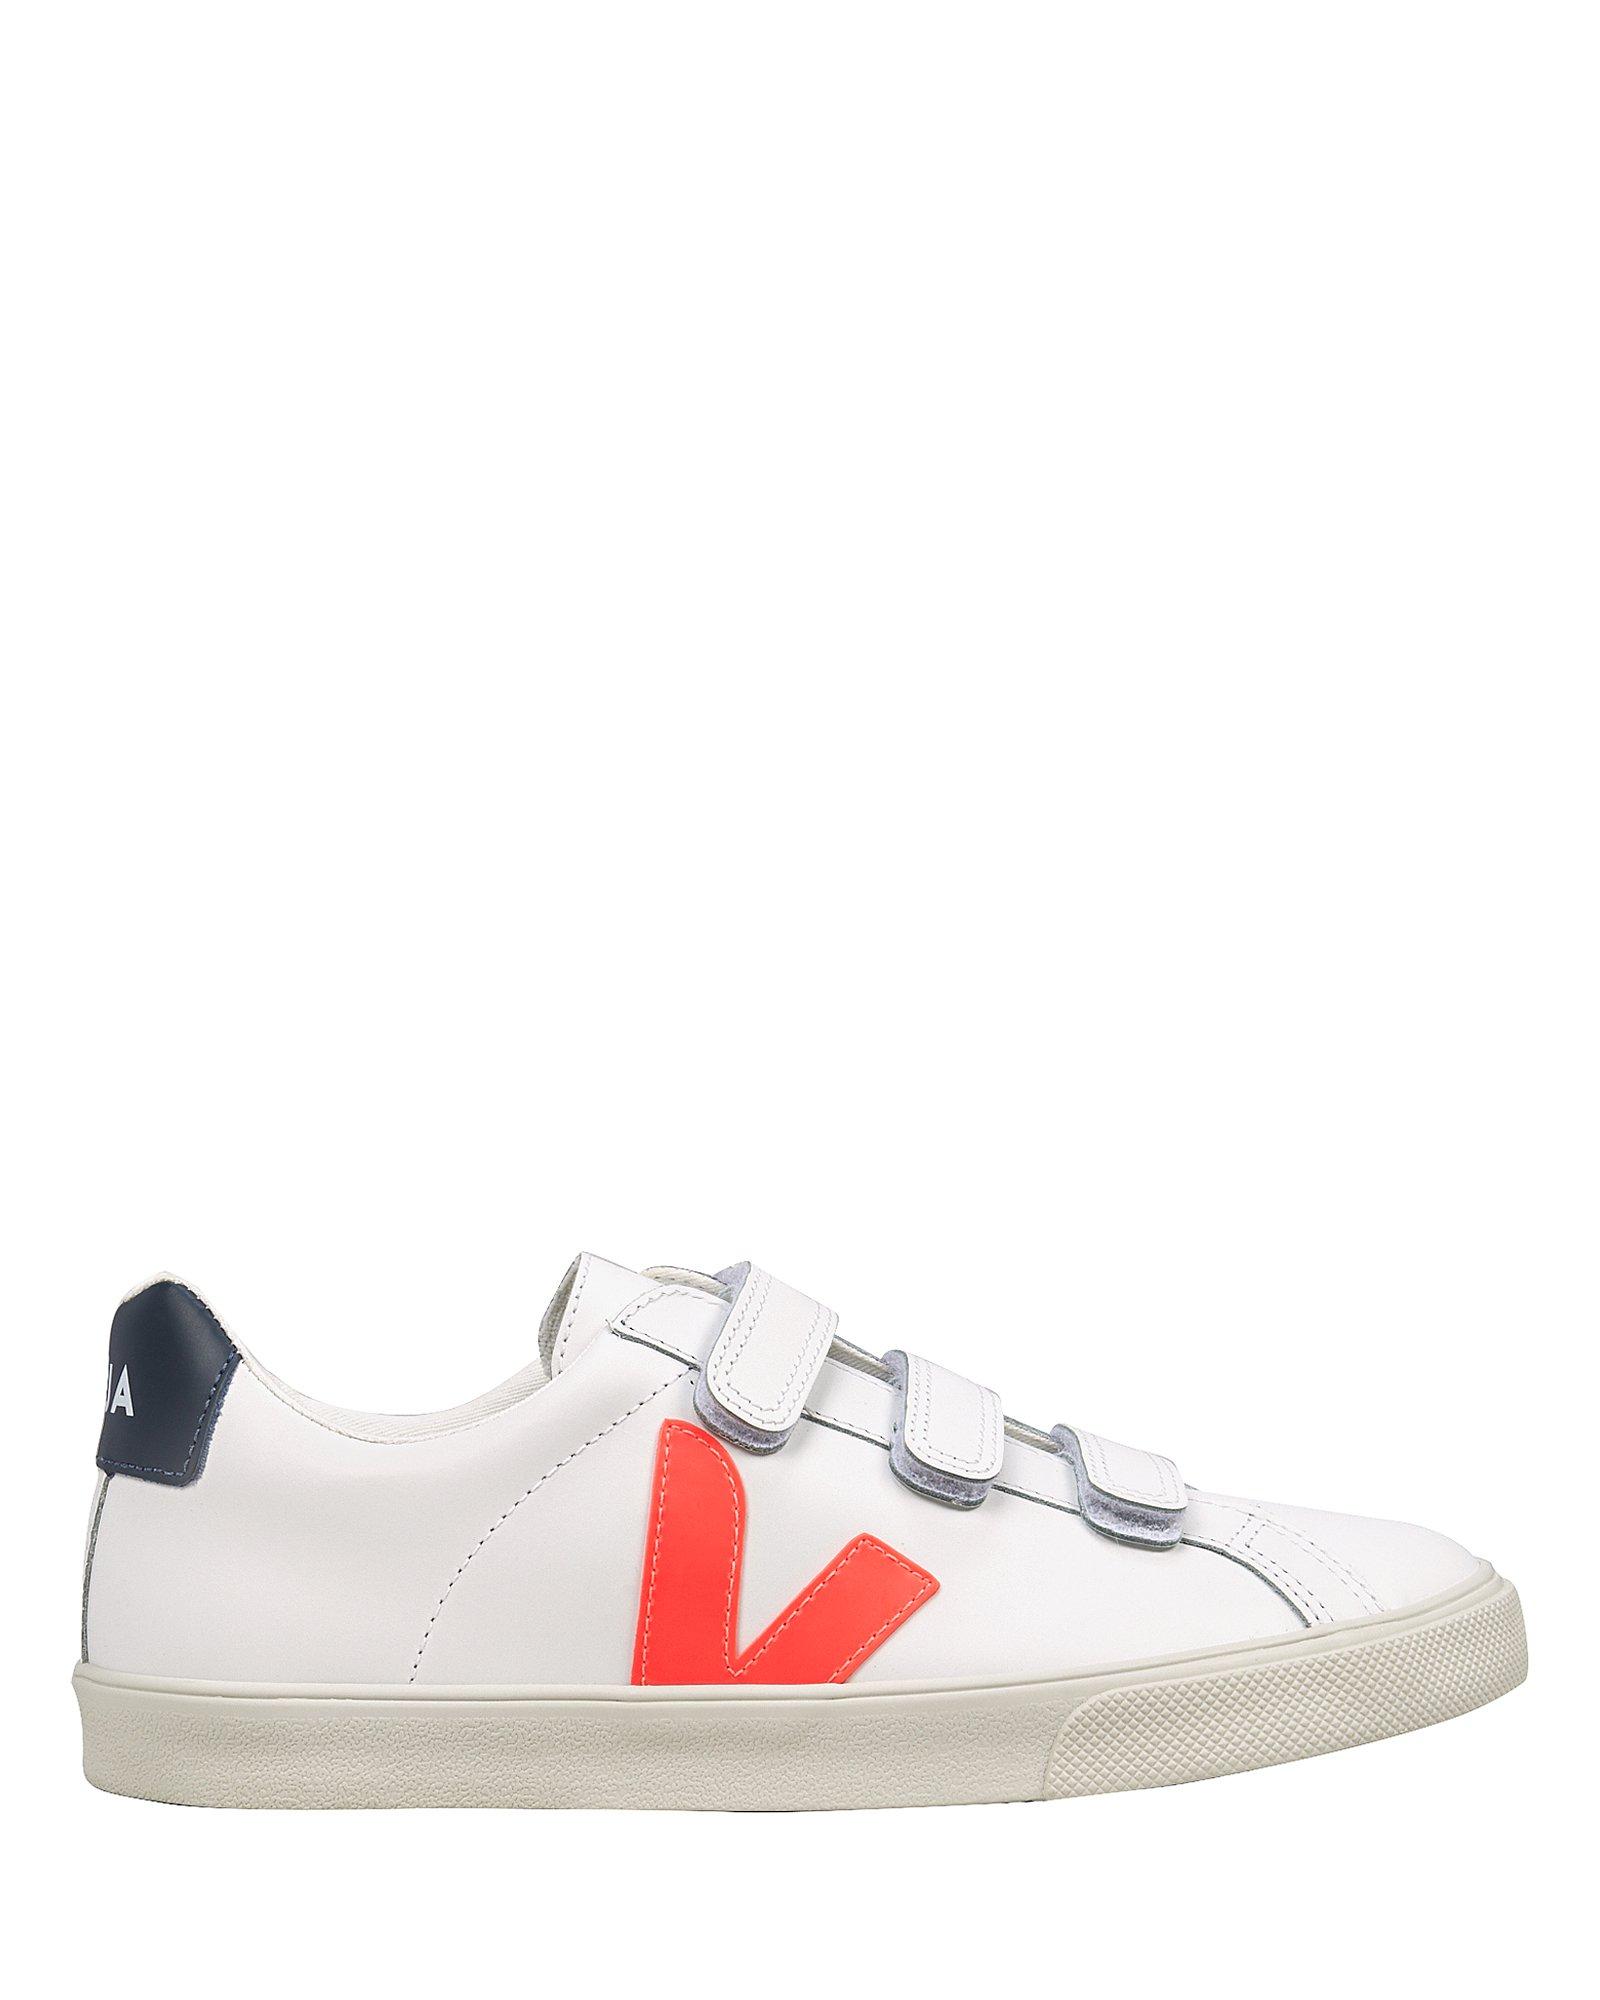 Veja '3-lock Logo' Leather Sneakers in White,Orange (White) - Lyst